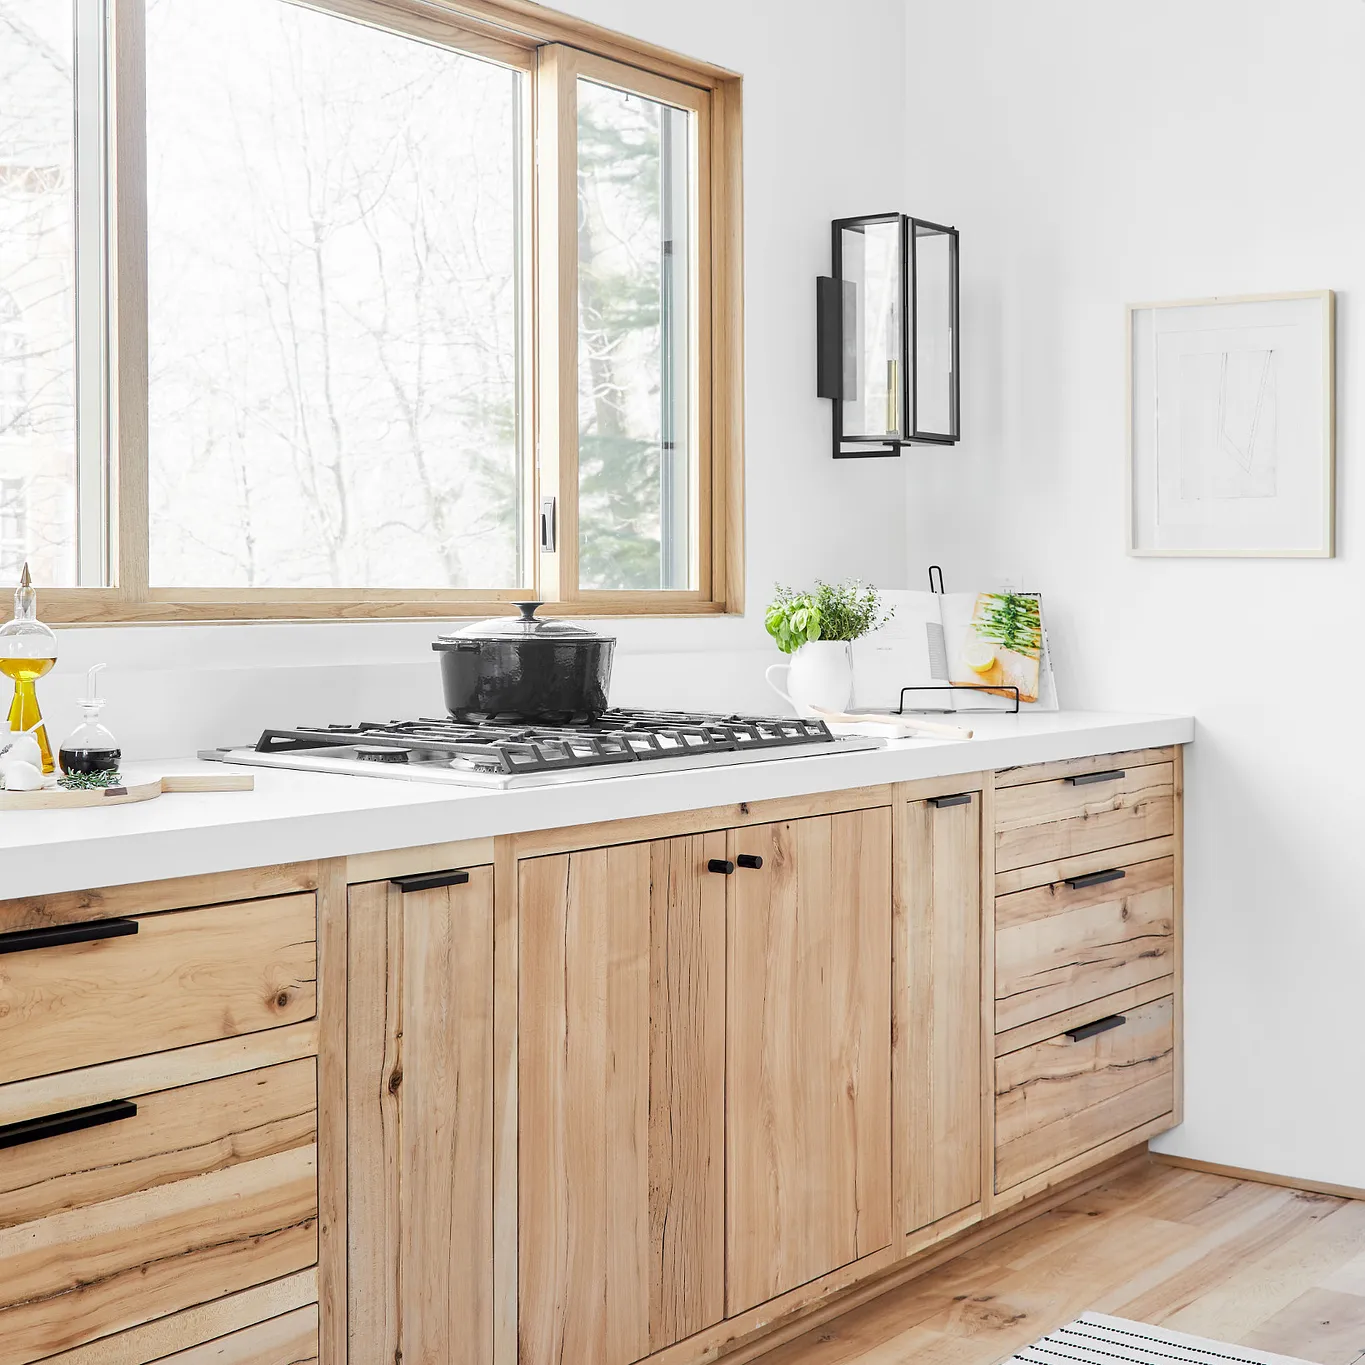 heather_helton's ideas  Kitchen remodel design, Dream kitchen